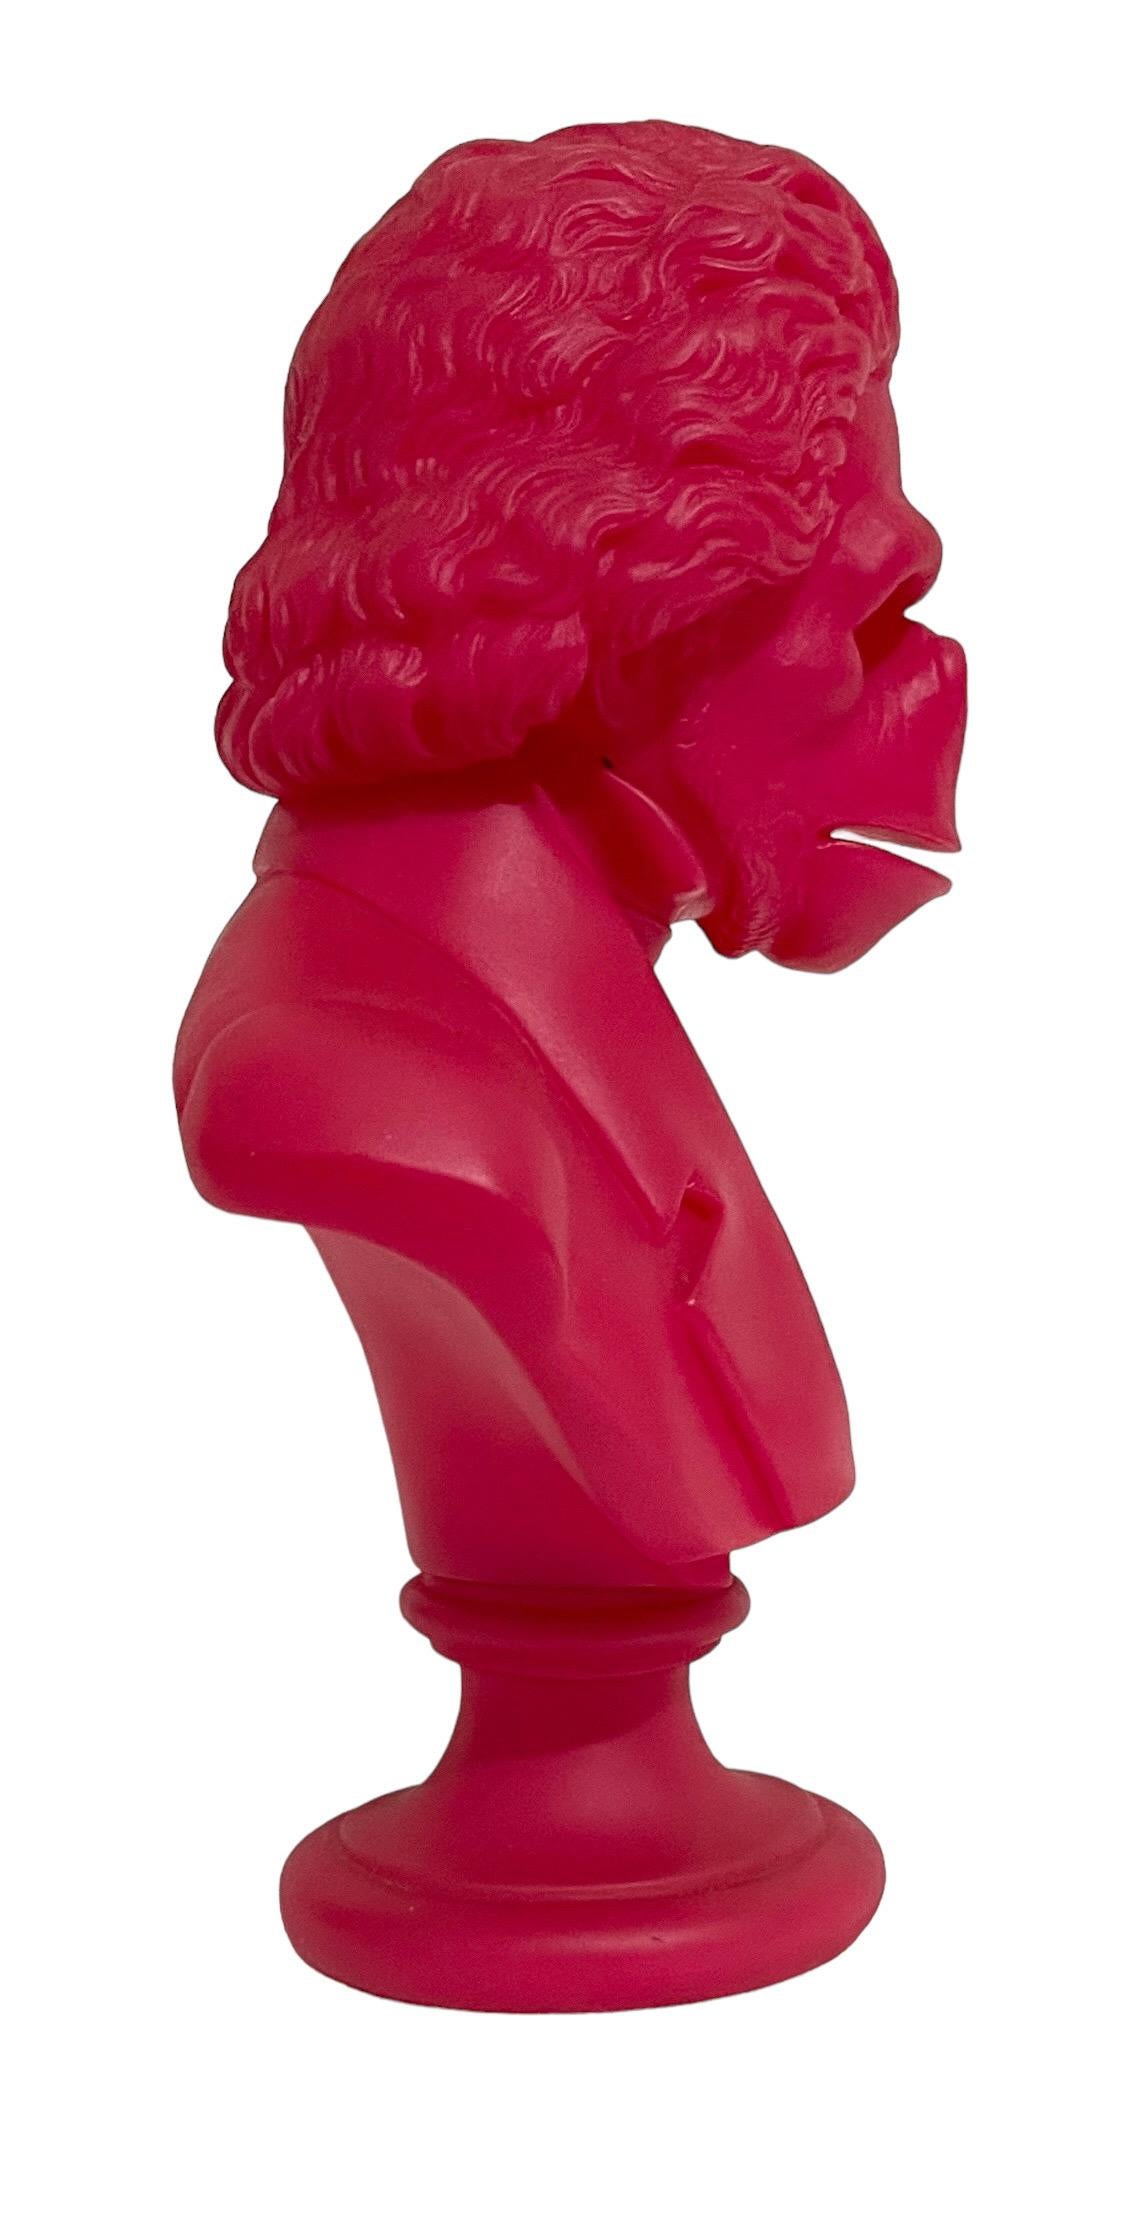 Rare Pink Apethoven Vinyl Adult Toy Ape Sculpture Bust SSUR Beethoven Medicom For Sale 8